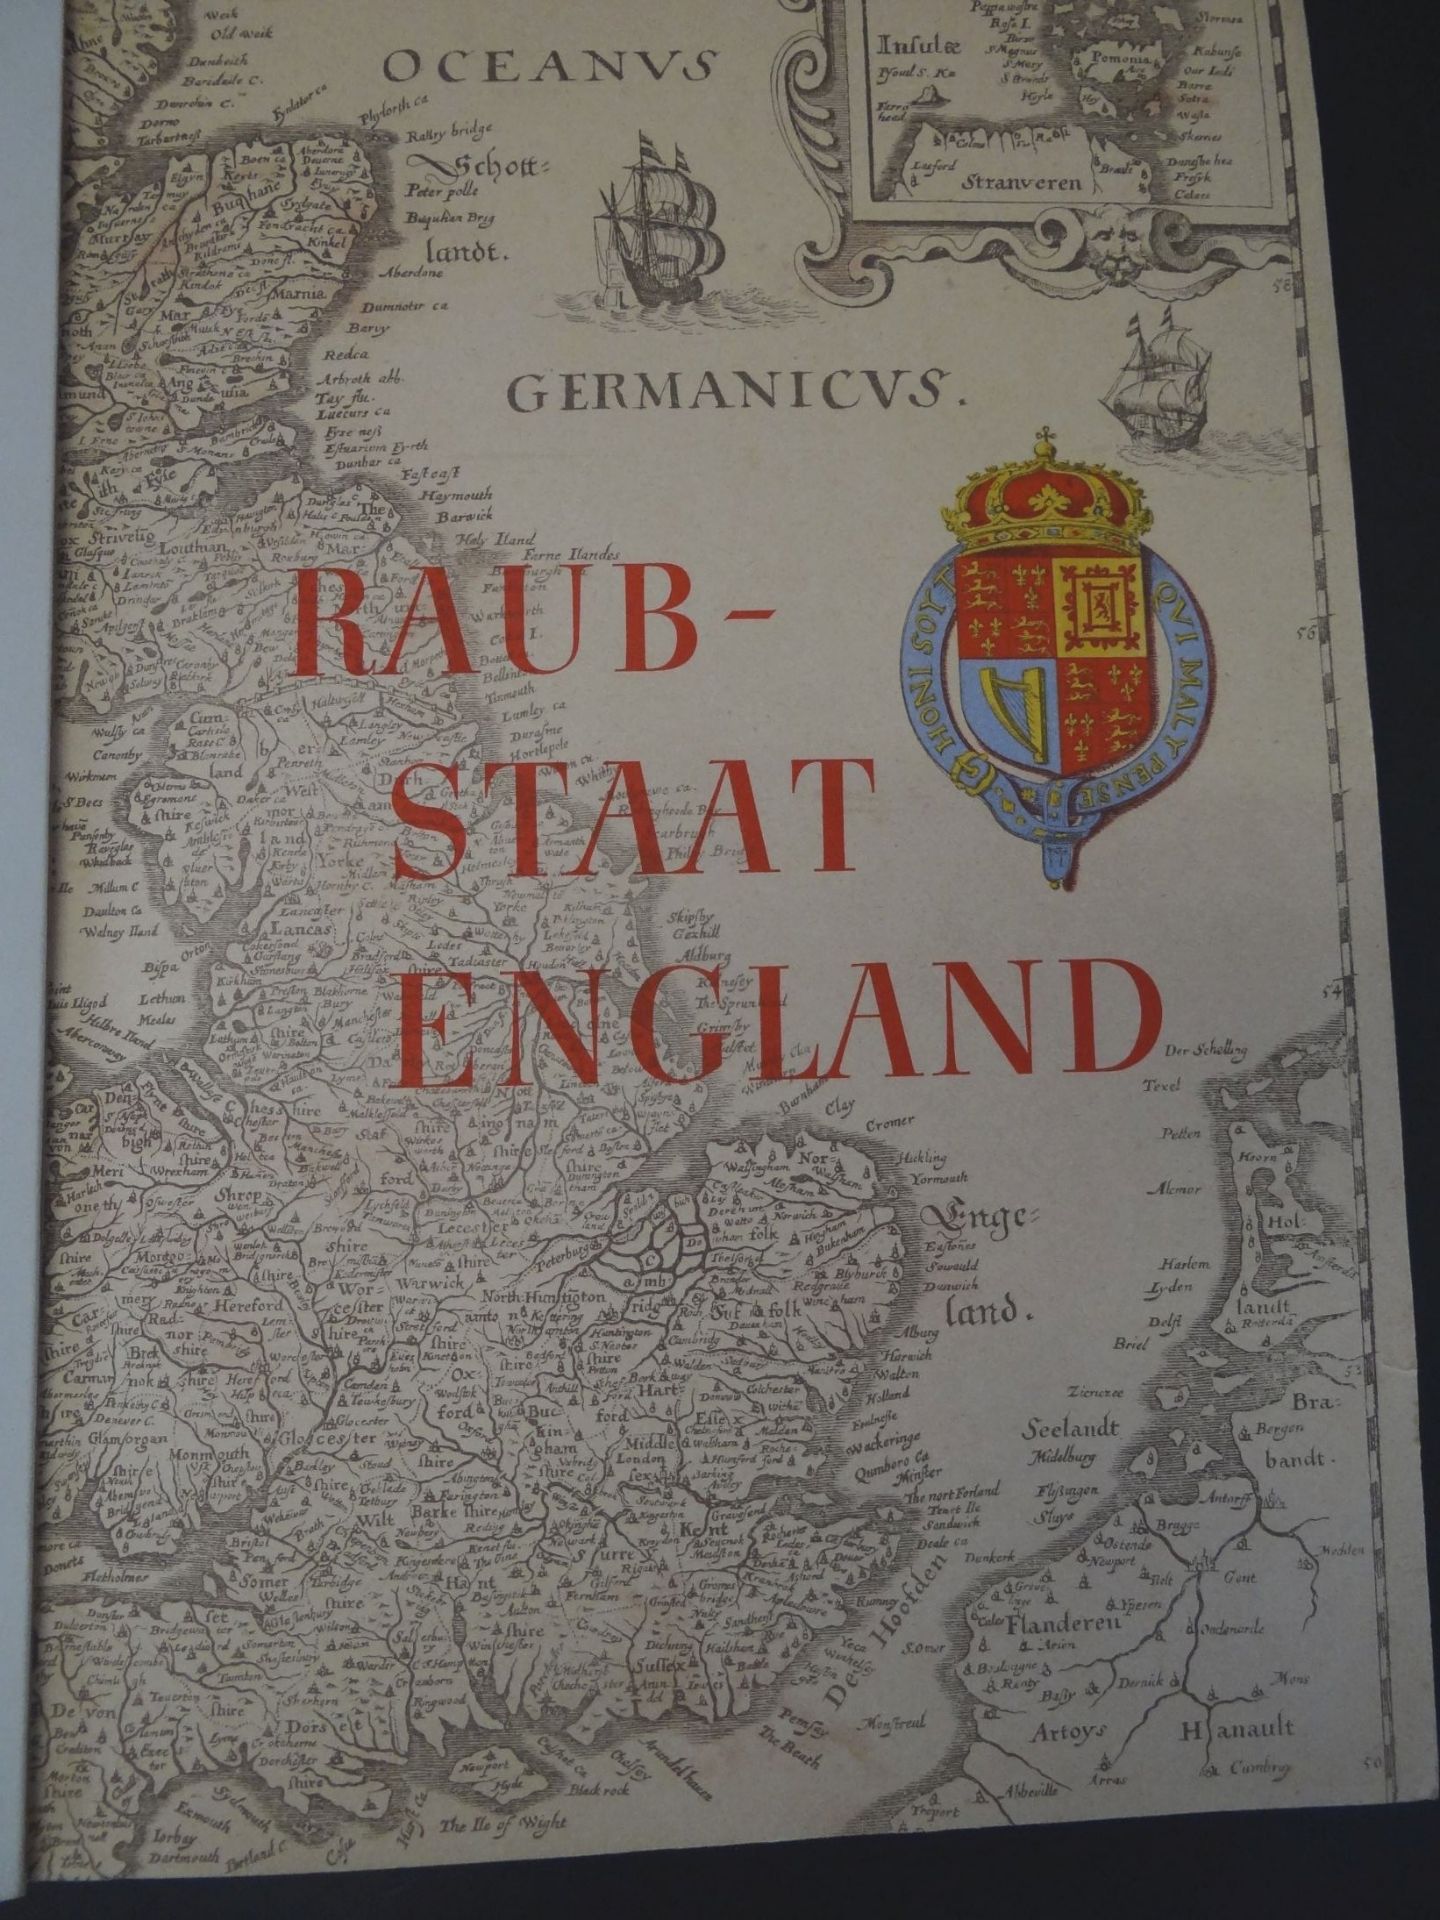 Propaganda-Sammelalbum "Raubstaat England" komplett - Image 2 of 5